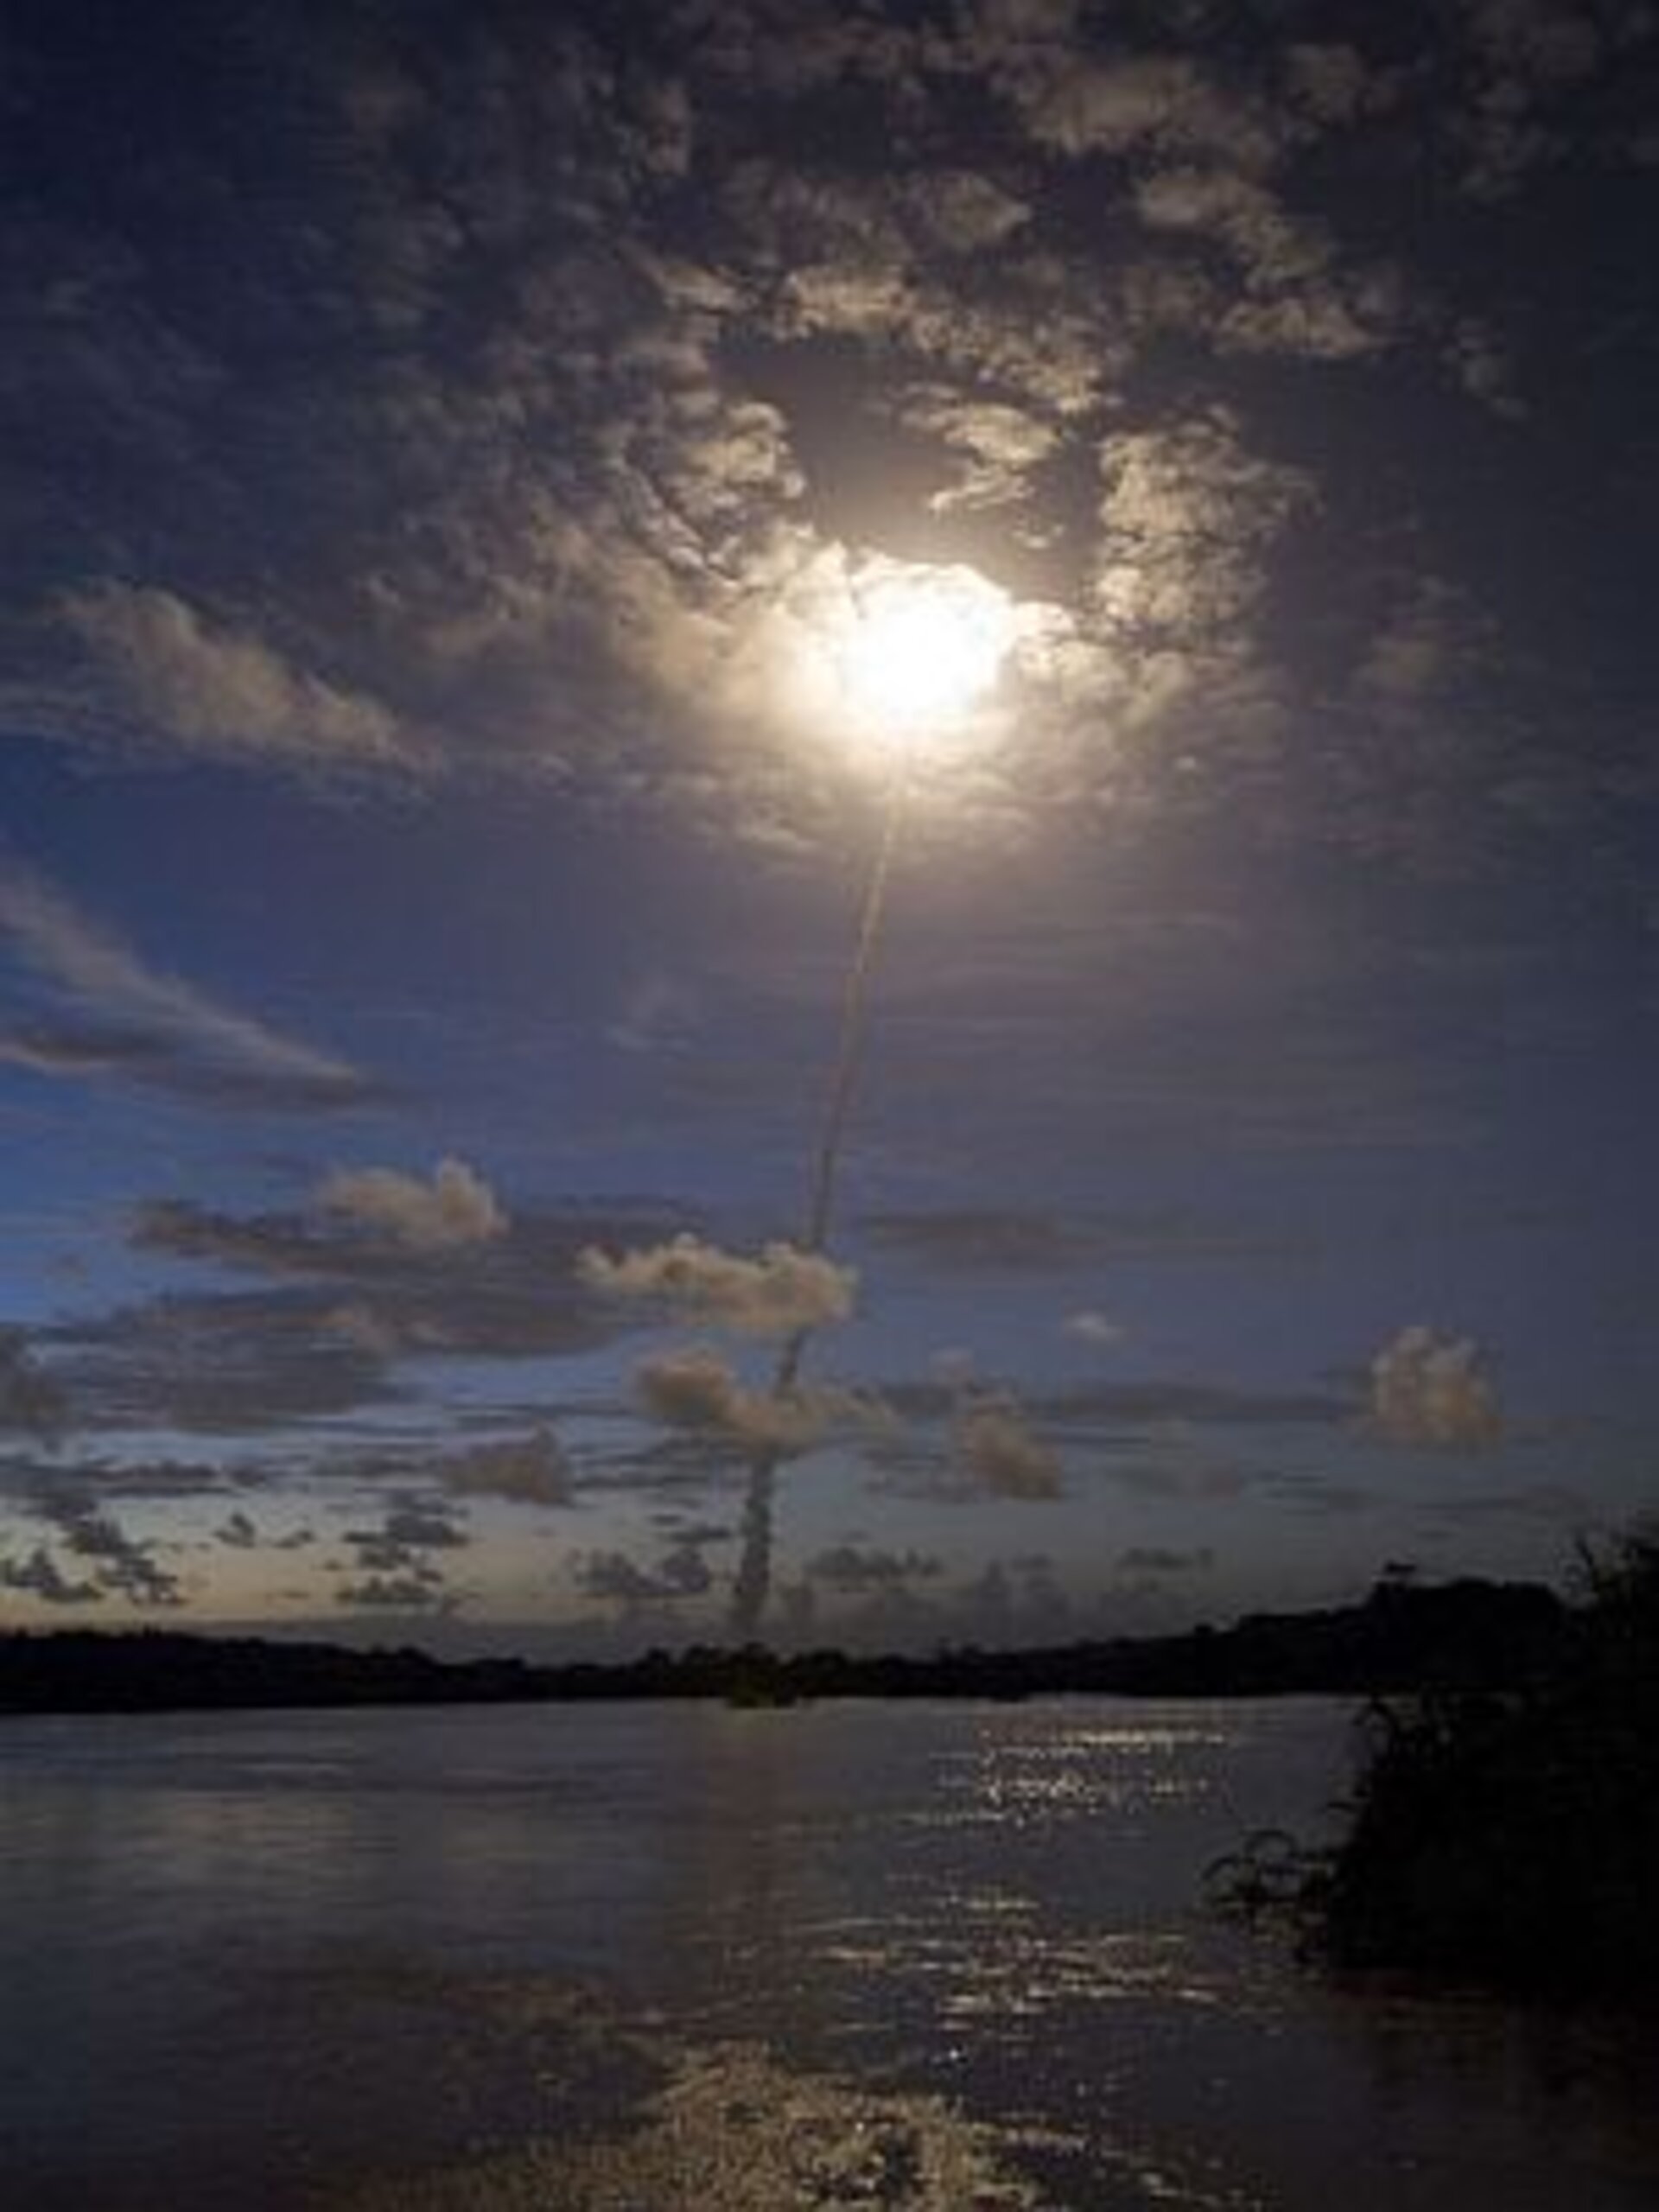 Årets første oppskyting med Ariane 5 skjedde 12. februar